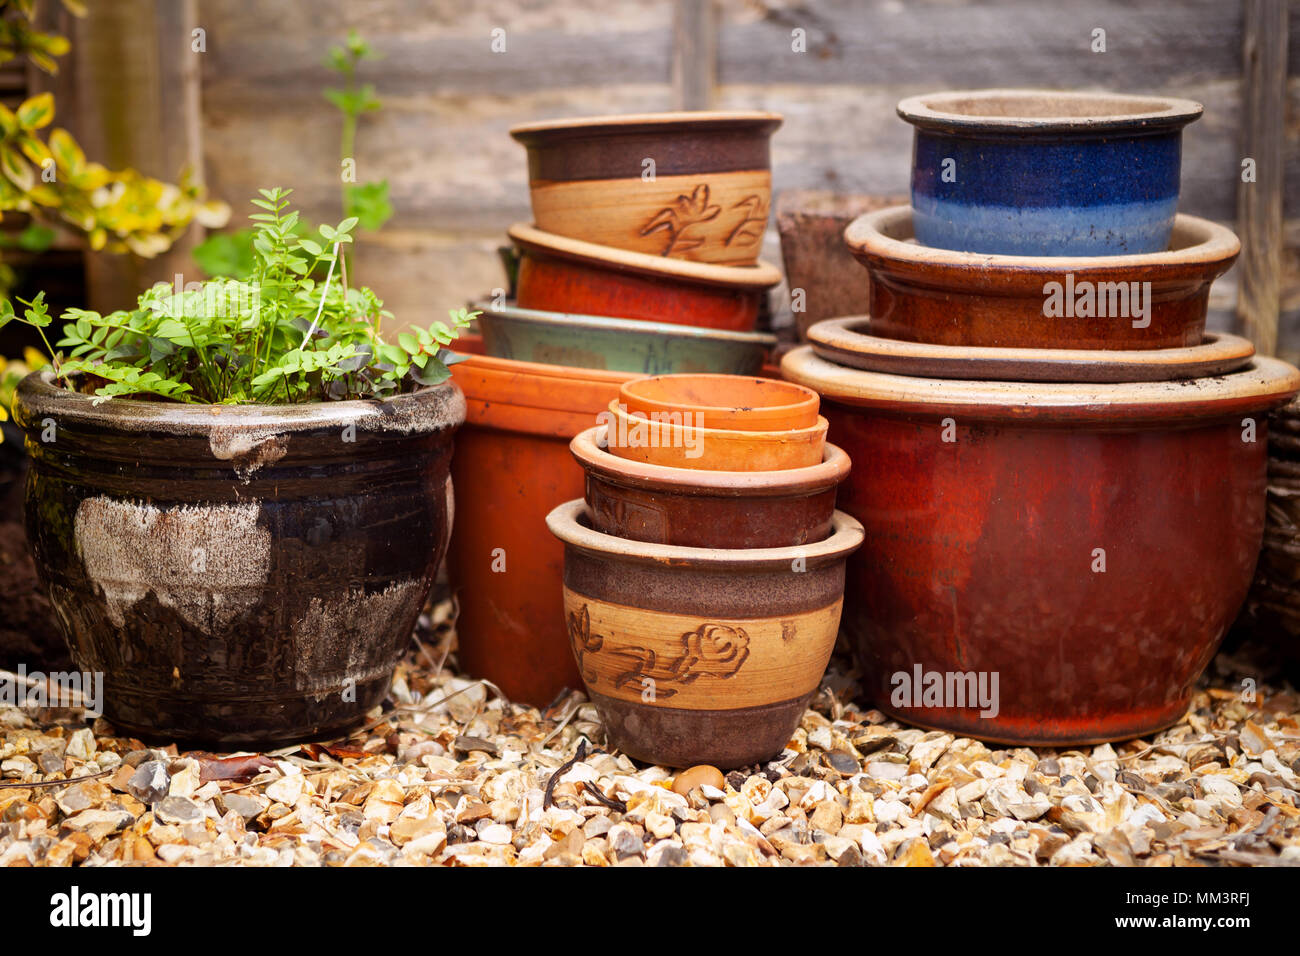 Vasi da giardino usati immagini e fotografie stock ad alta risoluzione -  Alamy